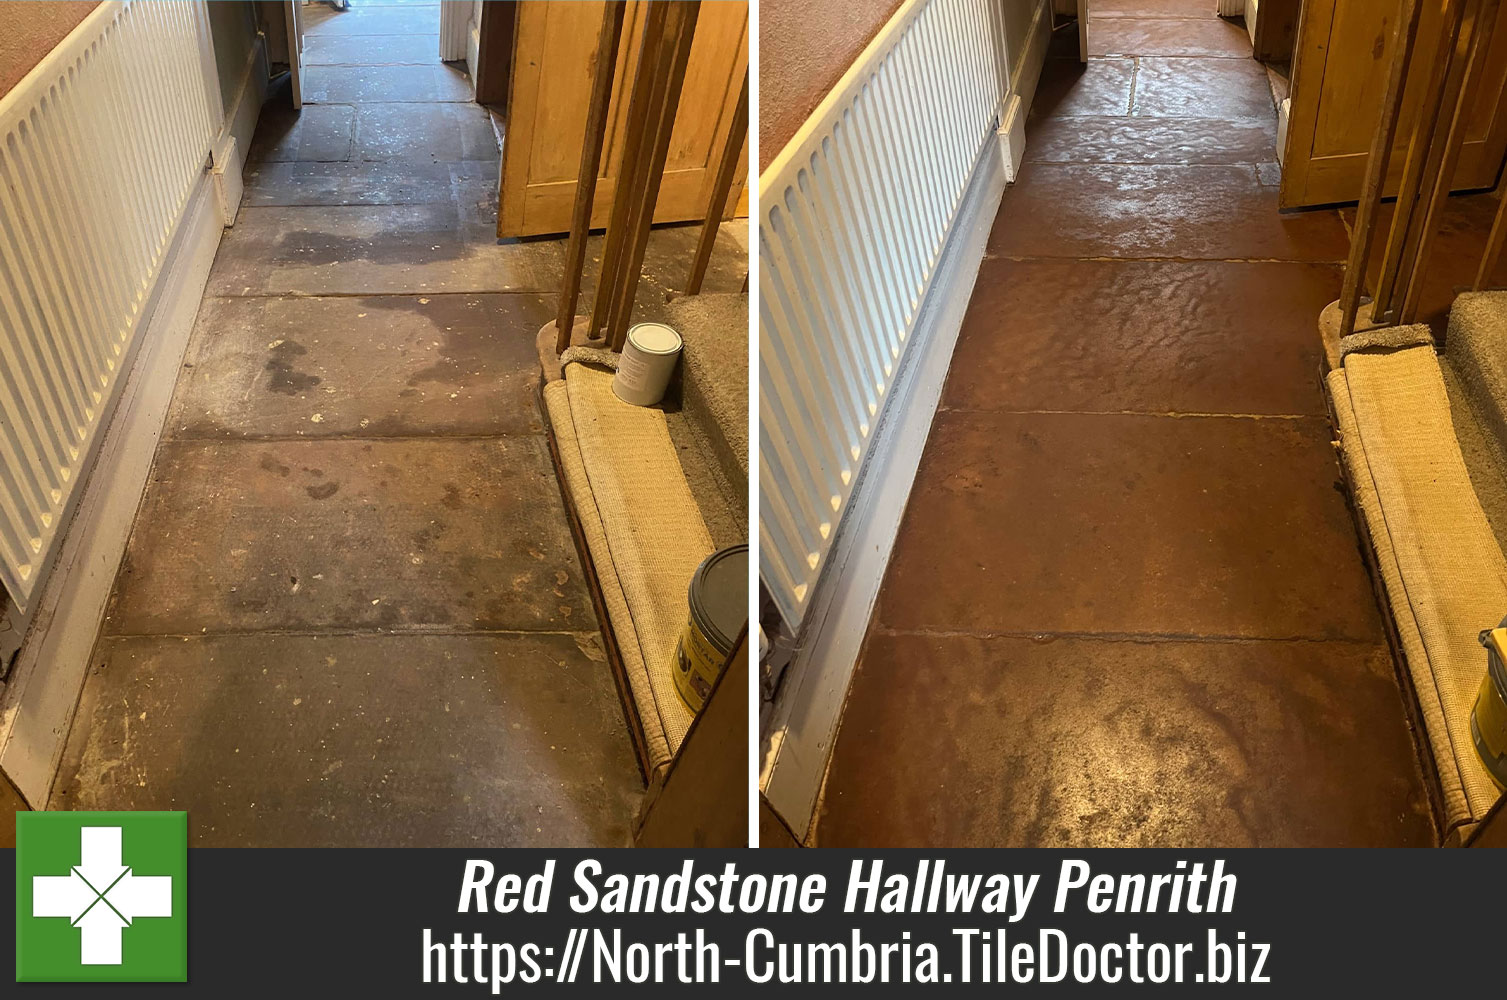 Flood Damaged Red Sandstone Hallway Renovation Penrith